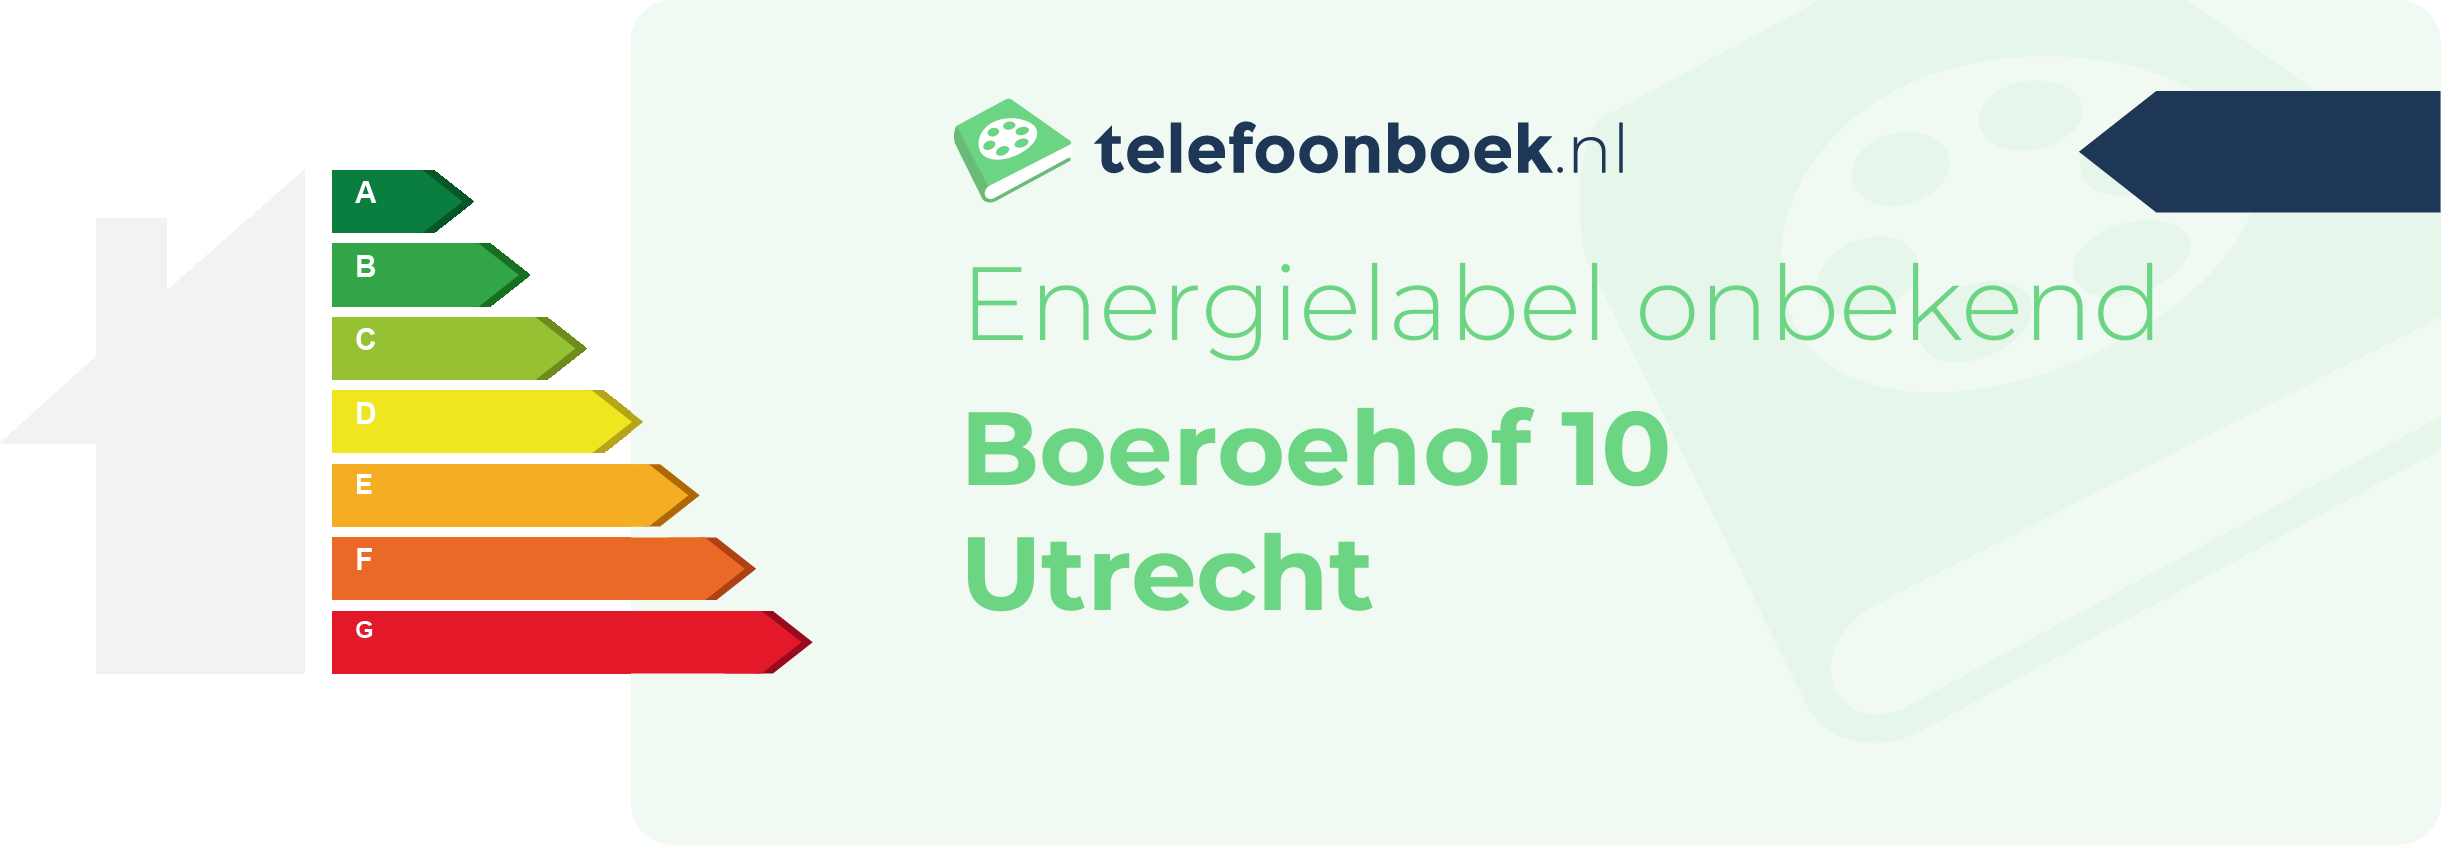 Energielabel Boeroehof 10 Utrecht